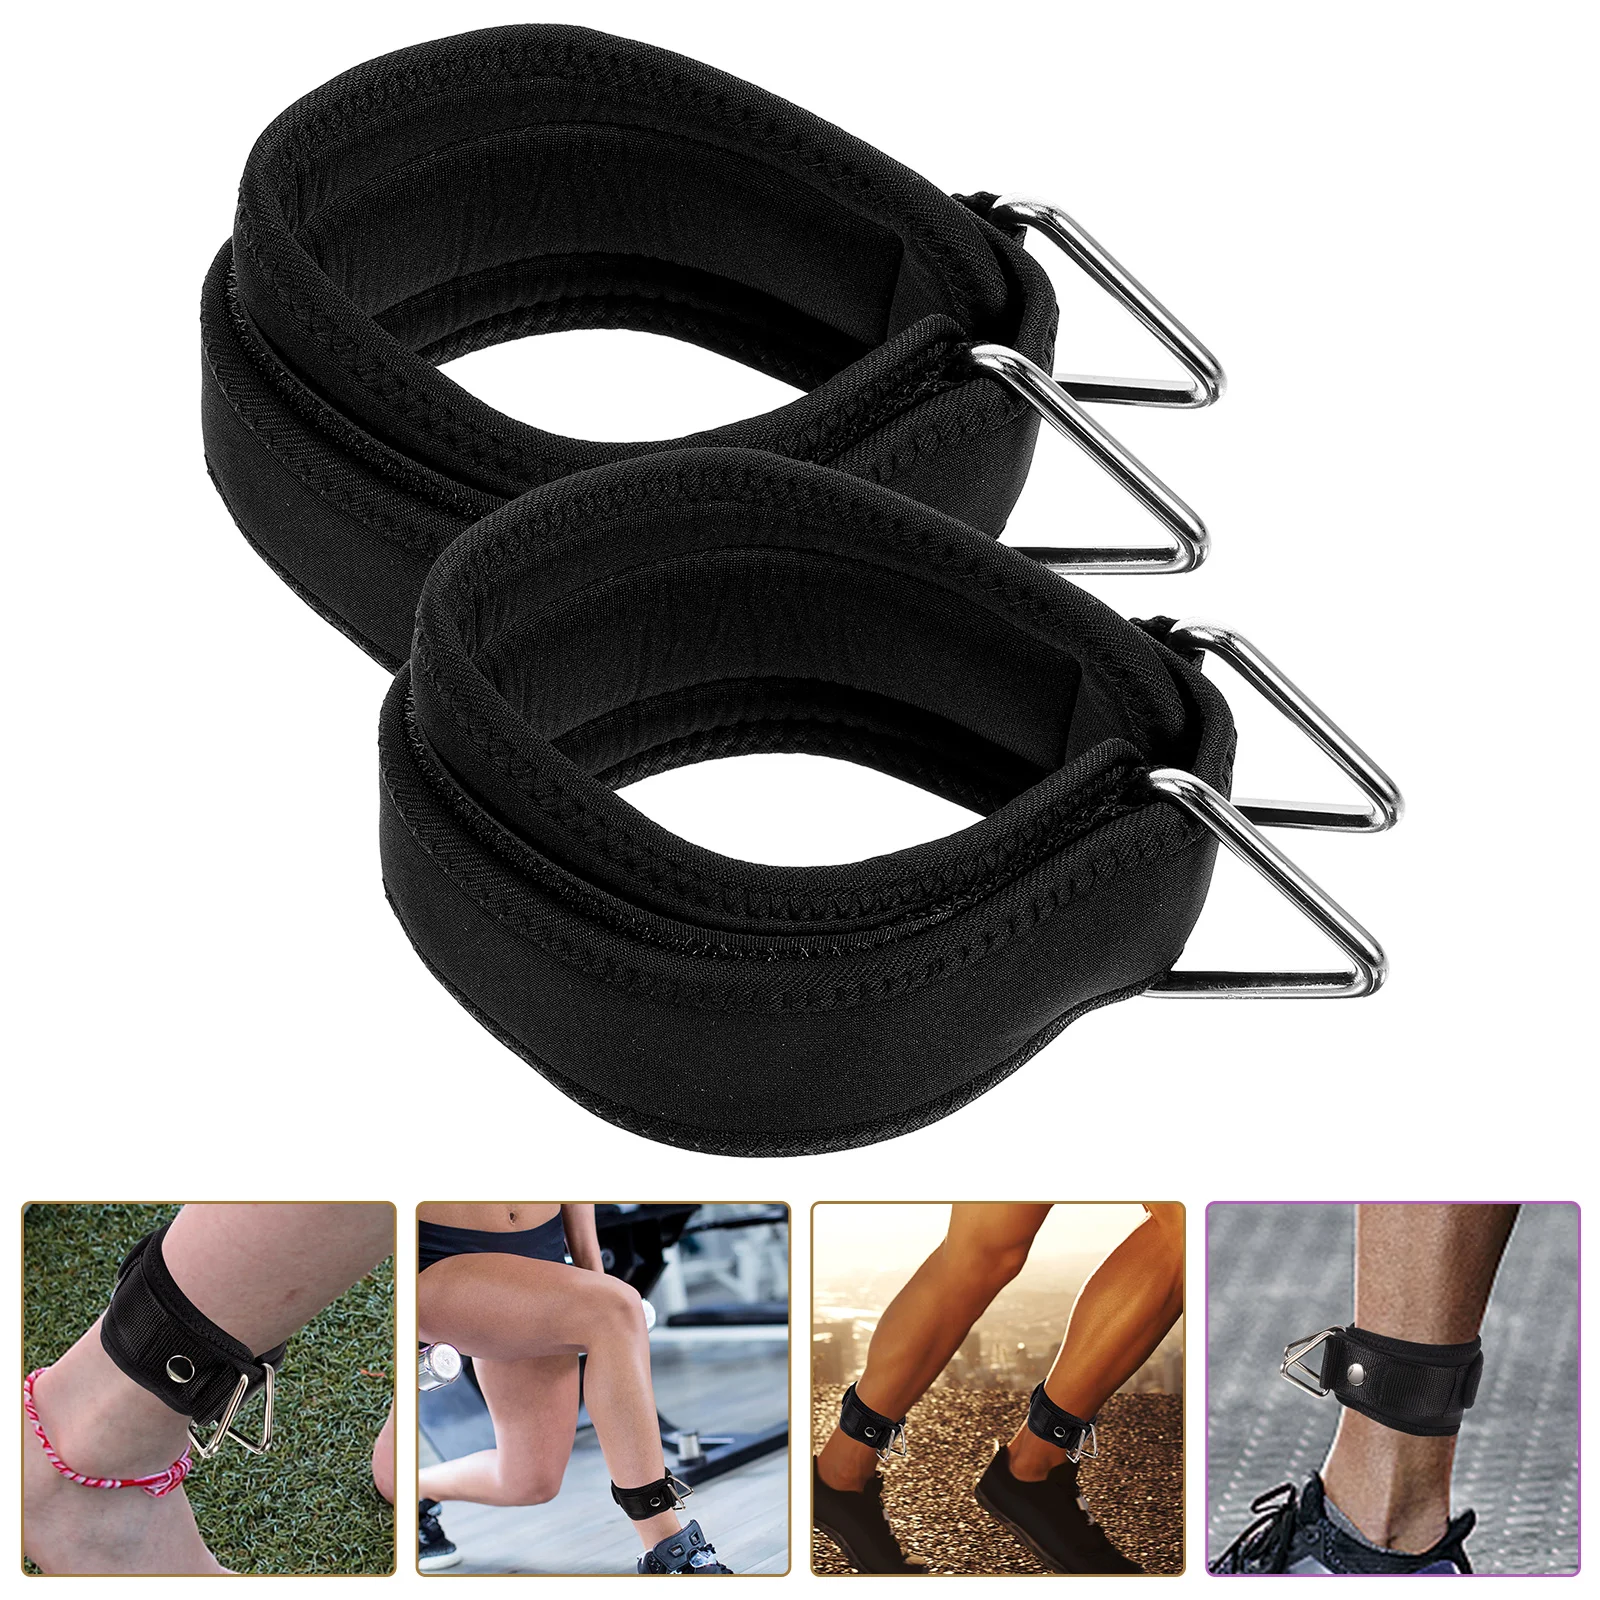 

Пряжка для щиколотки для фитнеса и силовых тренировок, спортивное защитное снаряжение, опорное кольцо, ножка, 1 пара регулируемых манжет для помещений